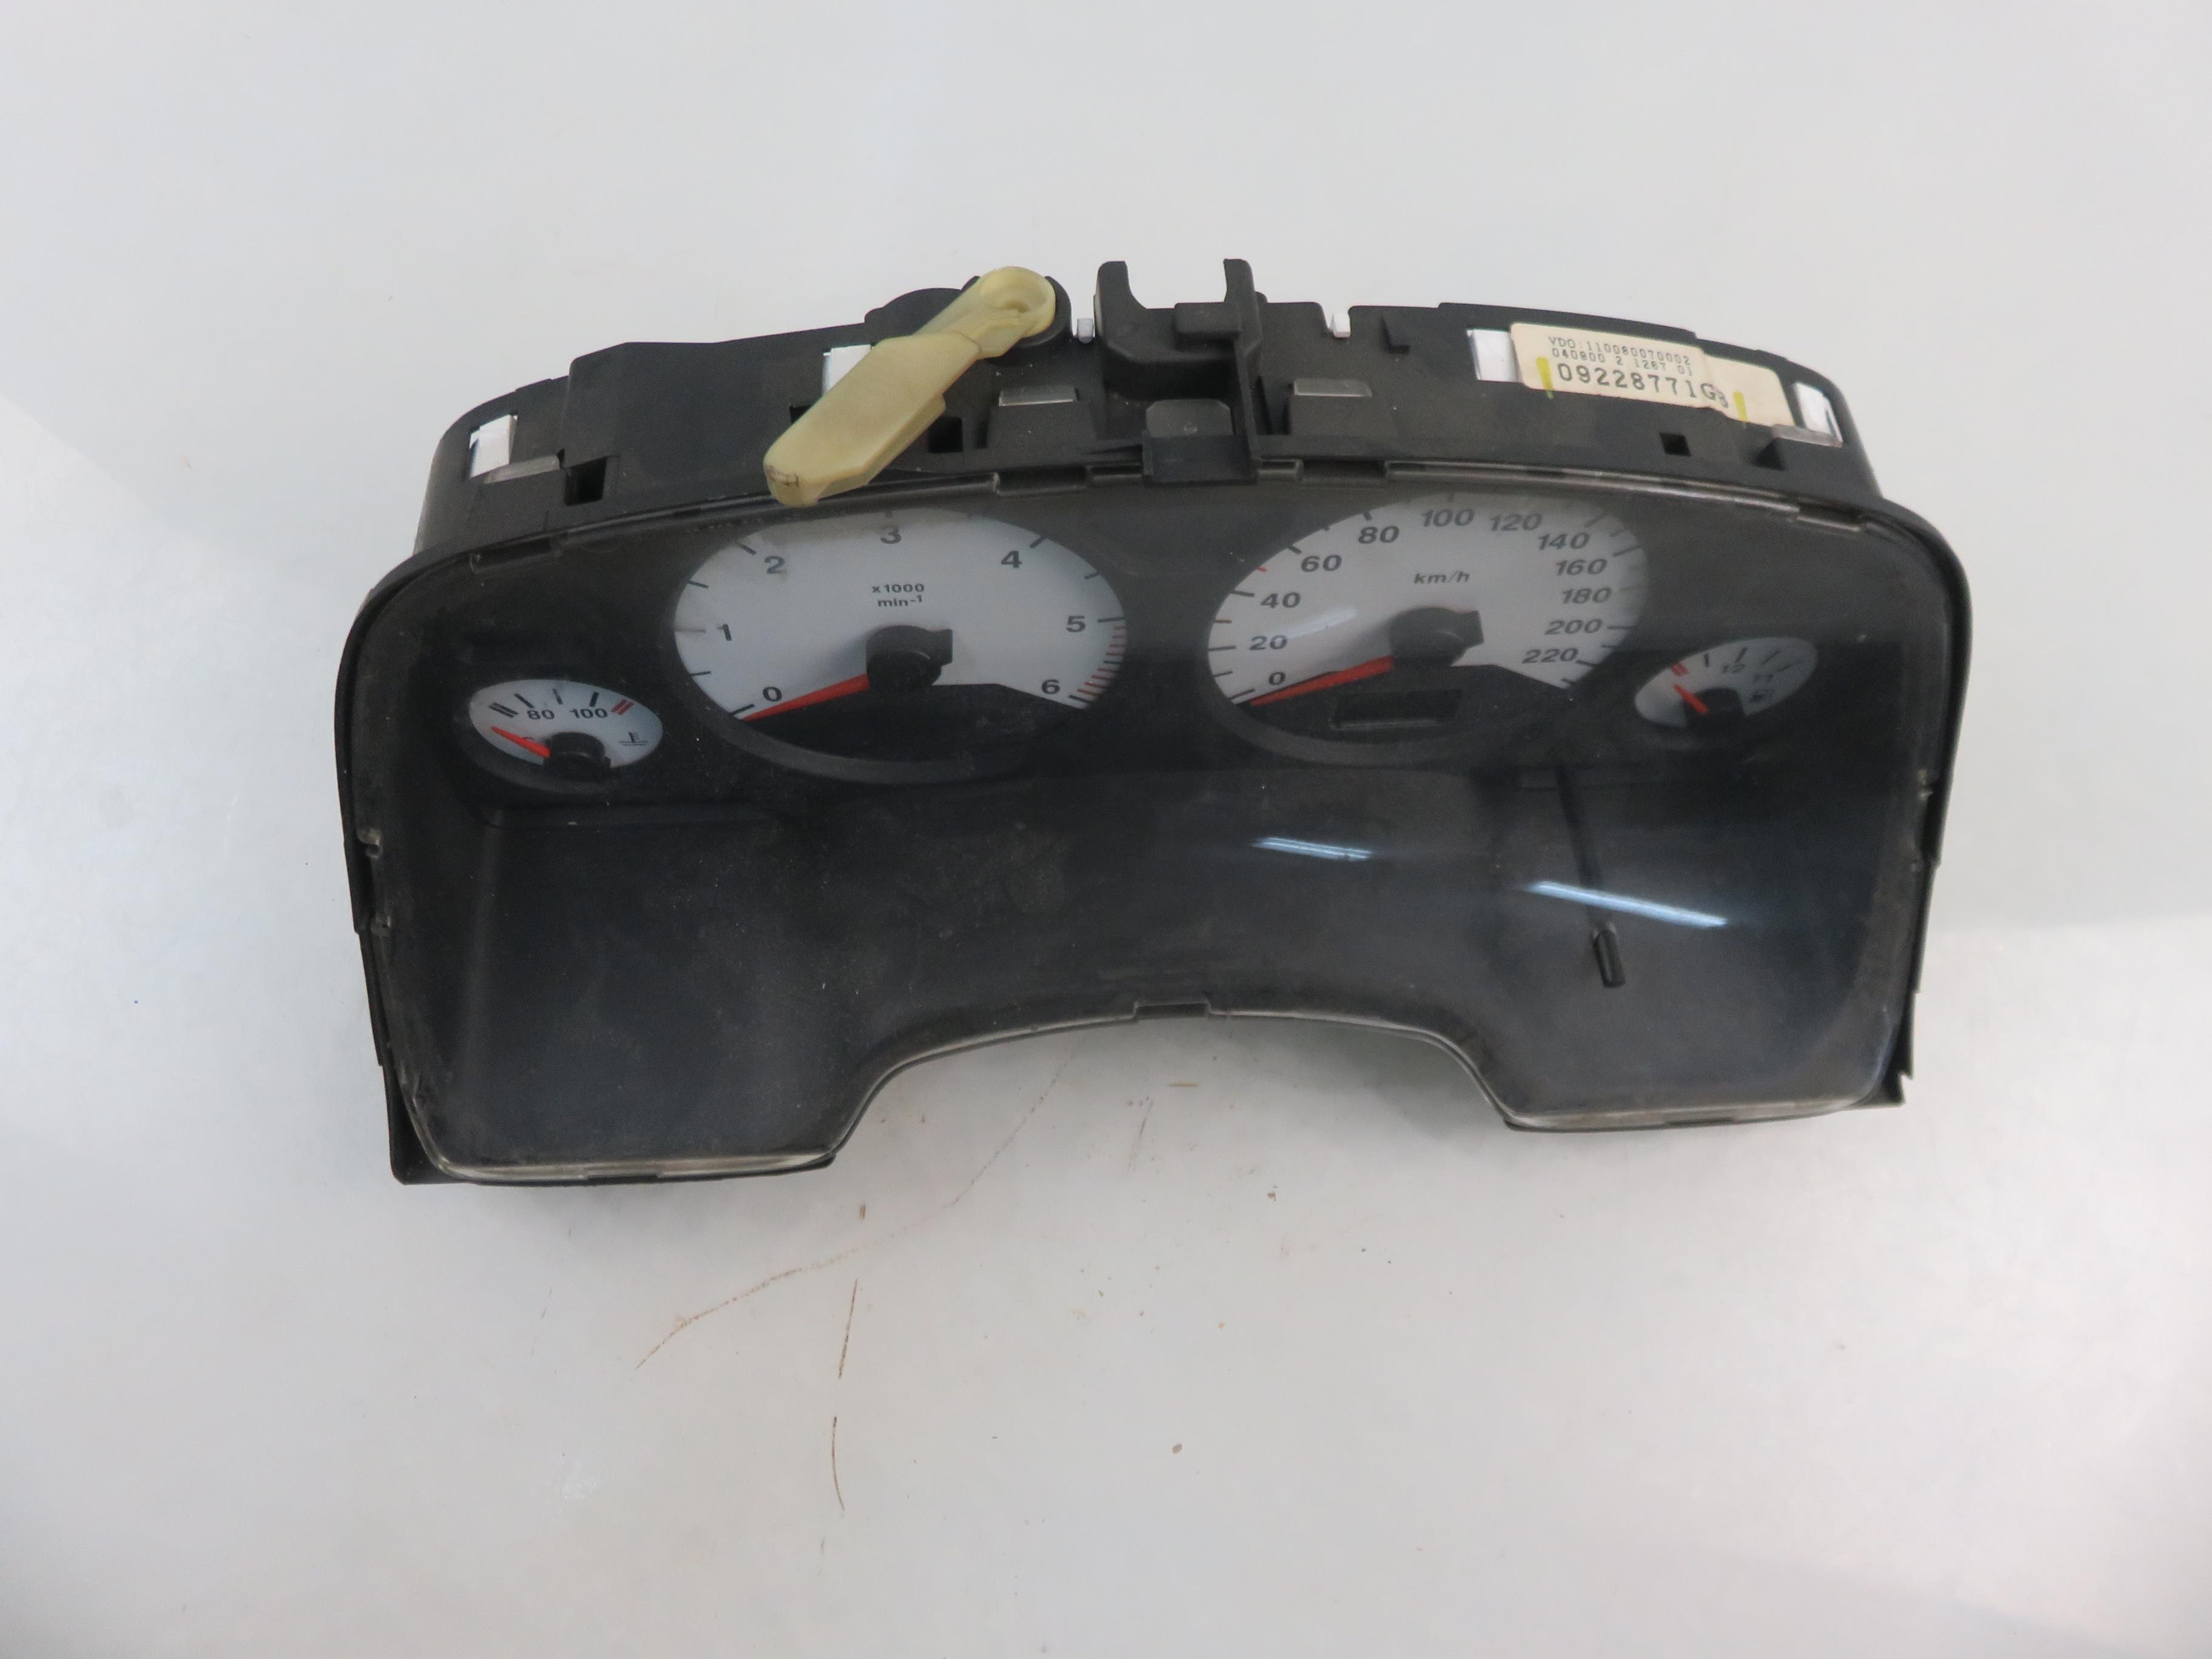 OPEL Zafira A (1999-2003) Speedometer 09228771GB 24027516